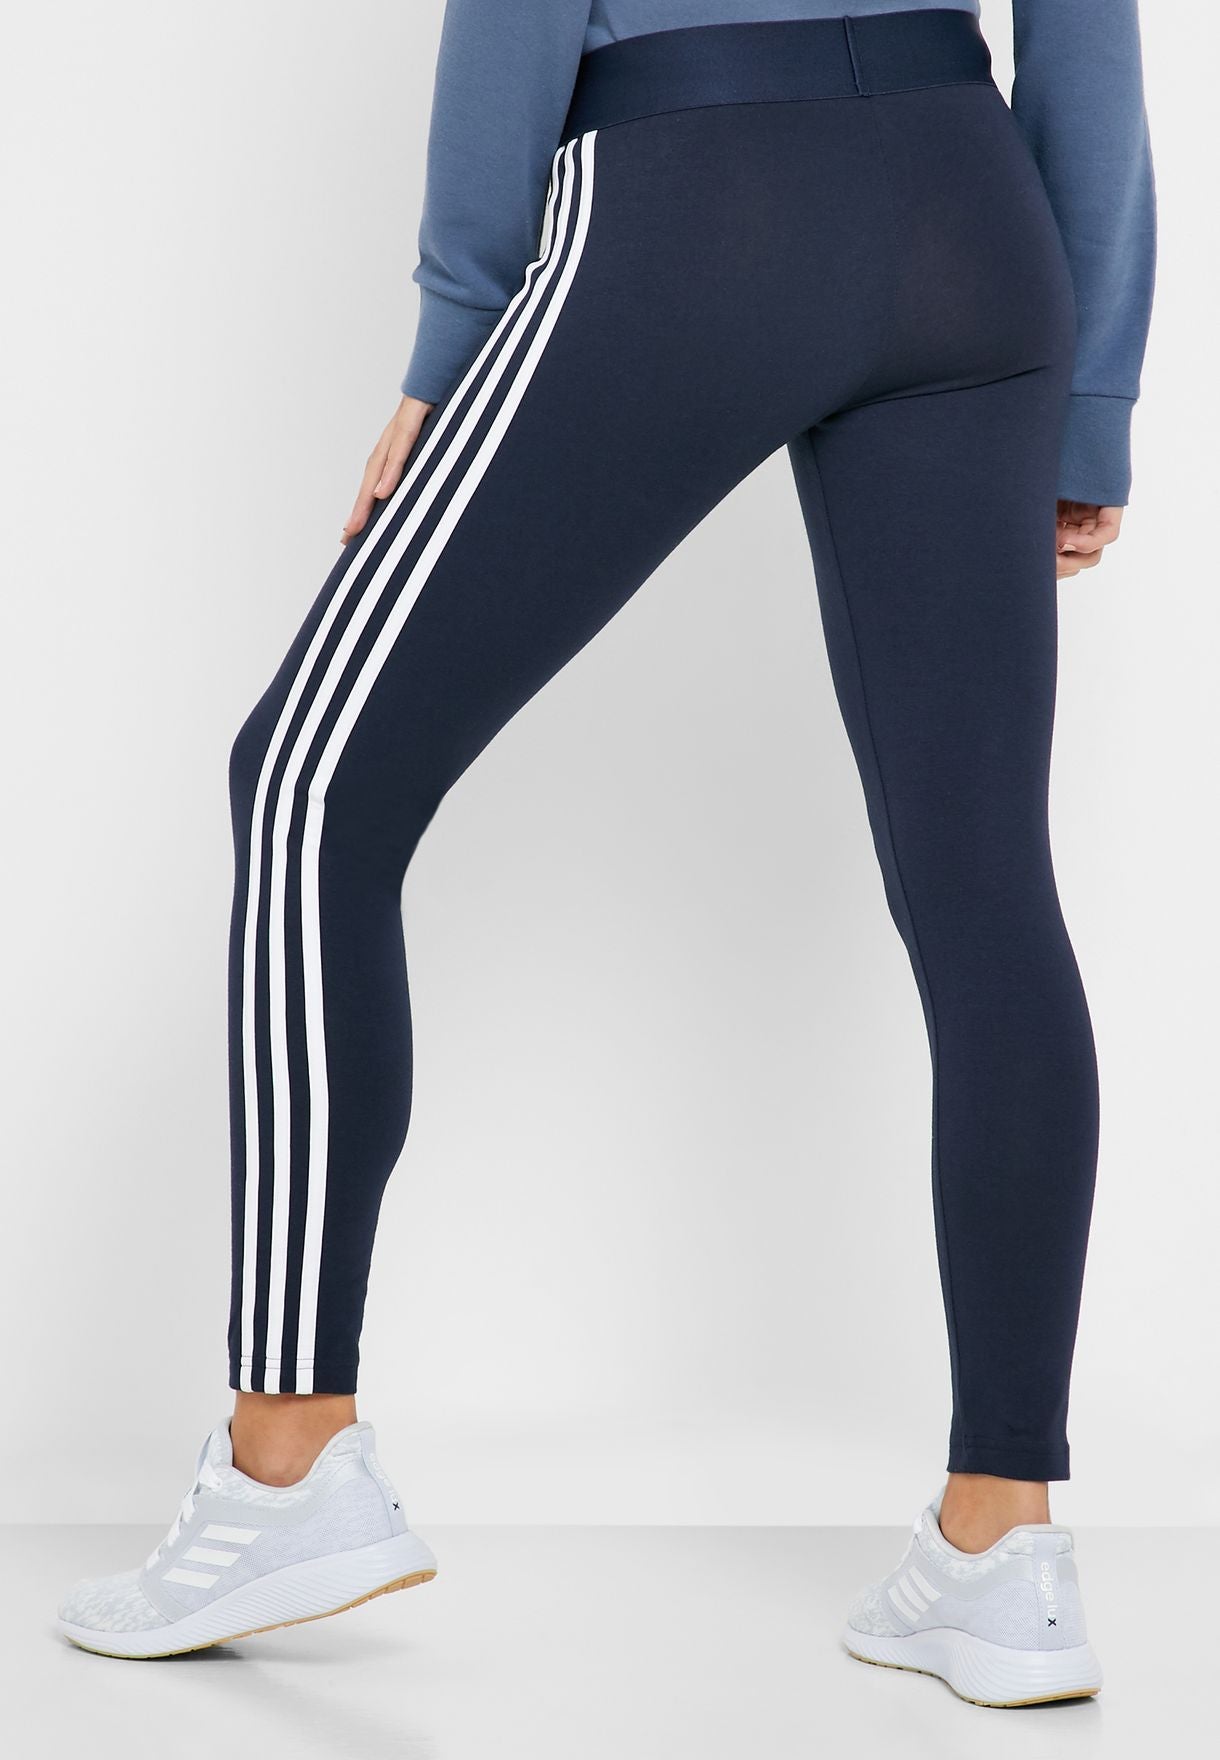 Adidas-F- Legging Essentials 3 Stripes Tight